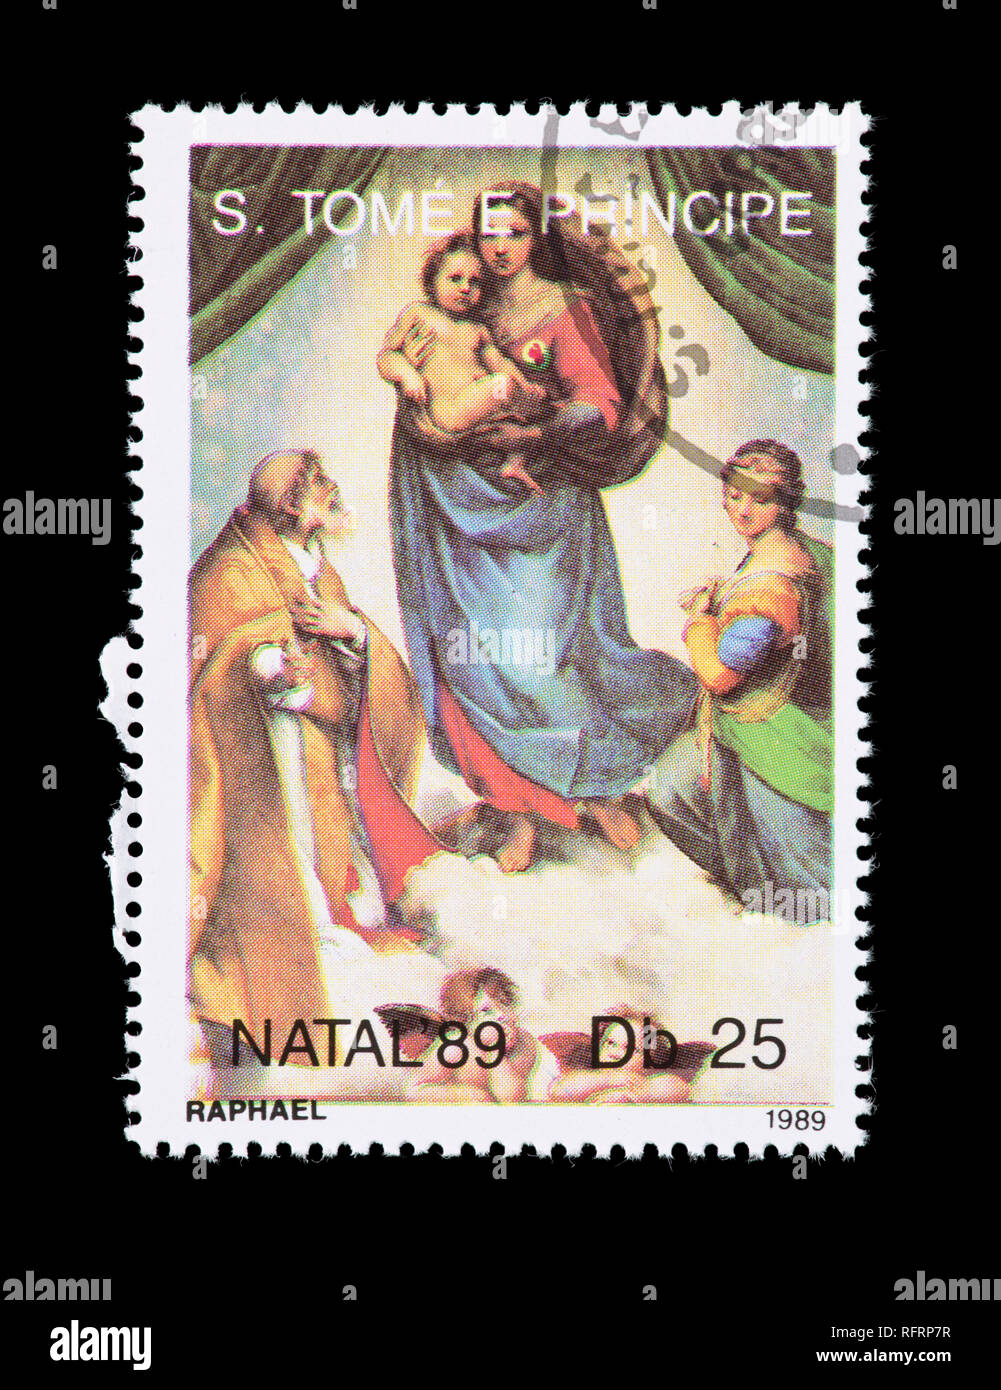 Briefmarke von der St. Thomas und Prinzeninseln, Detail aus dem Gemälde Raffaels Sixtinische Madonna Stockfoto